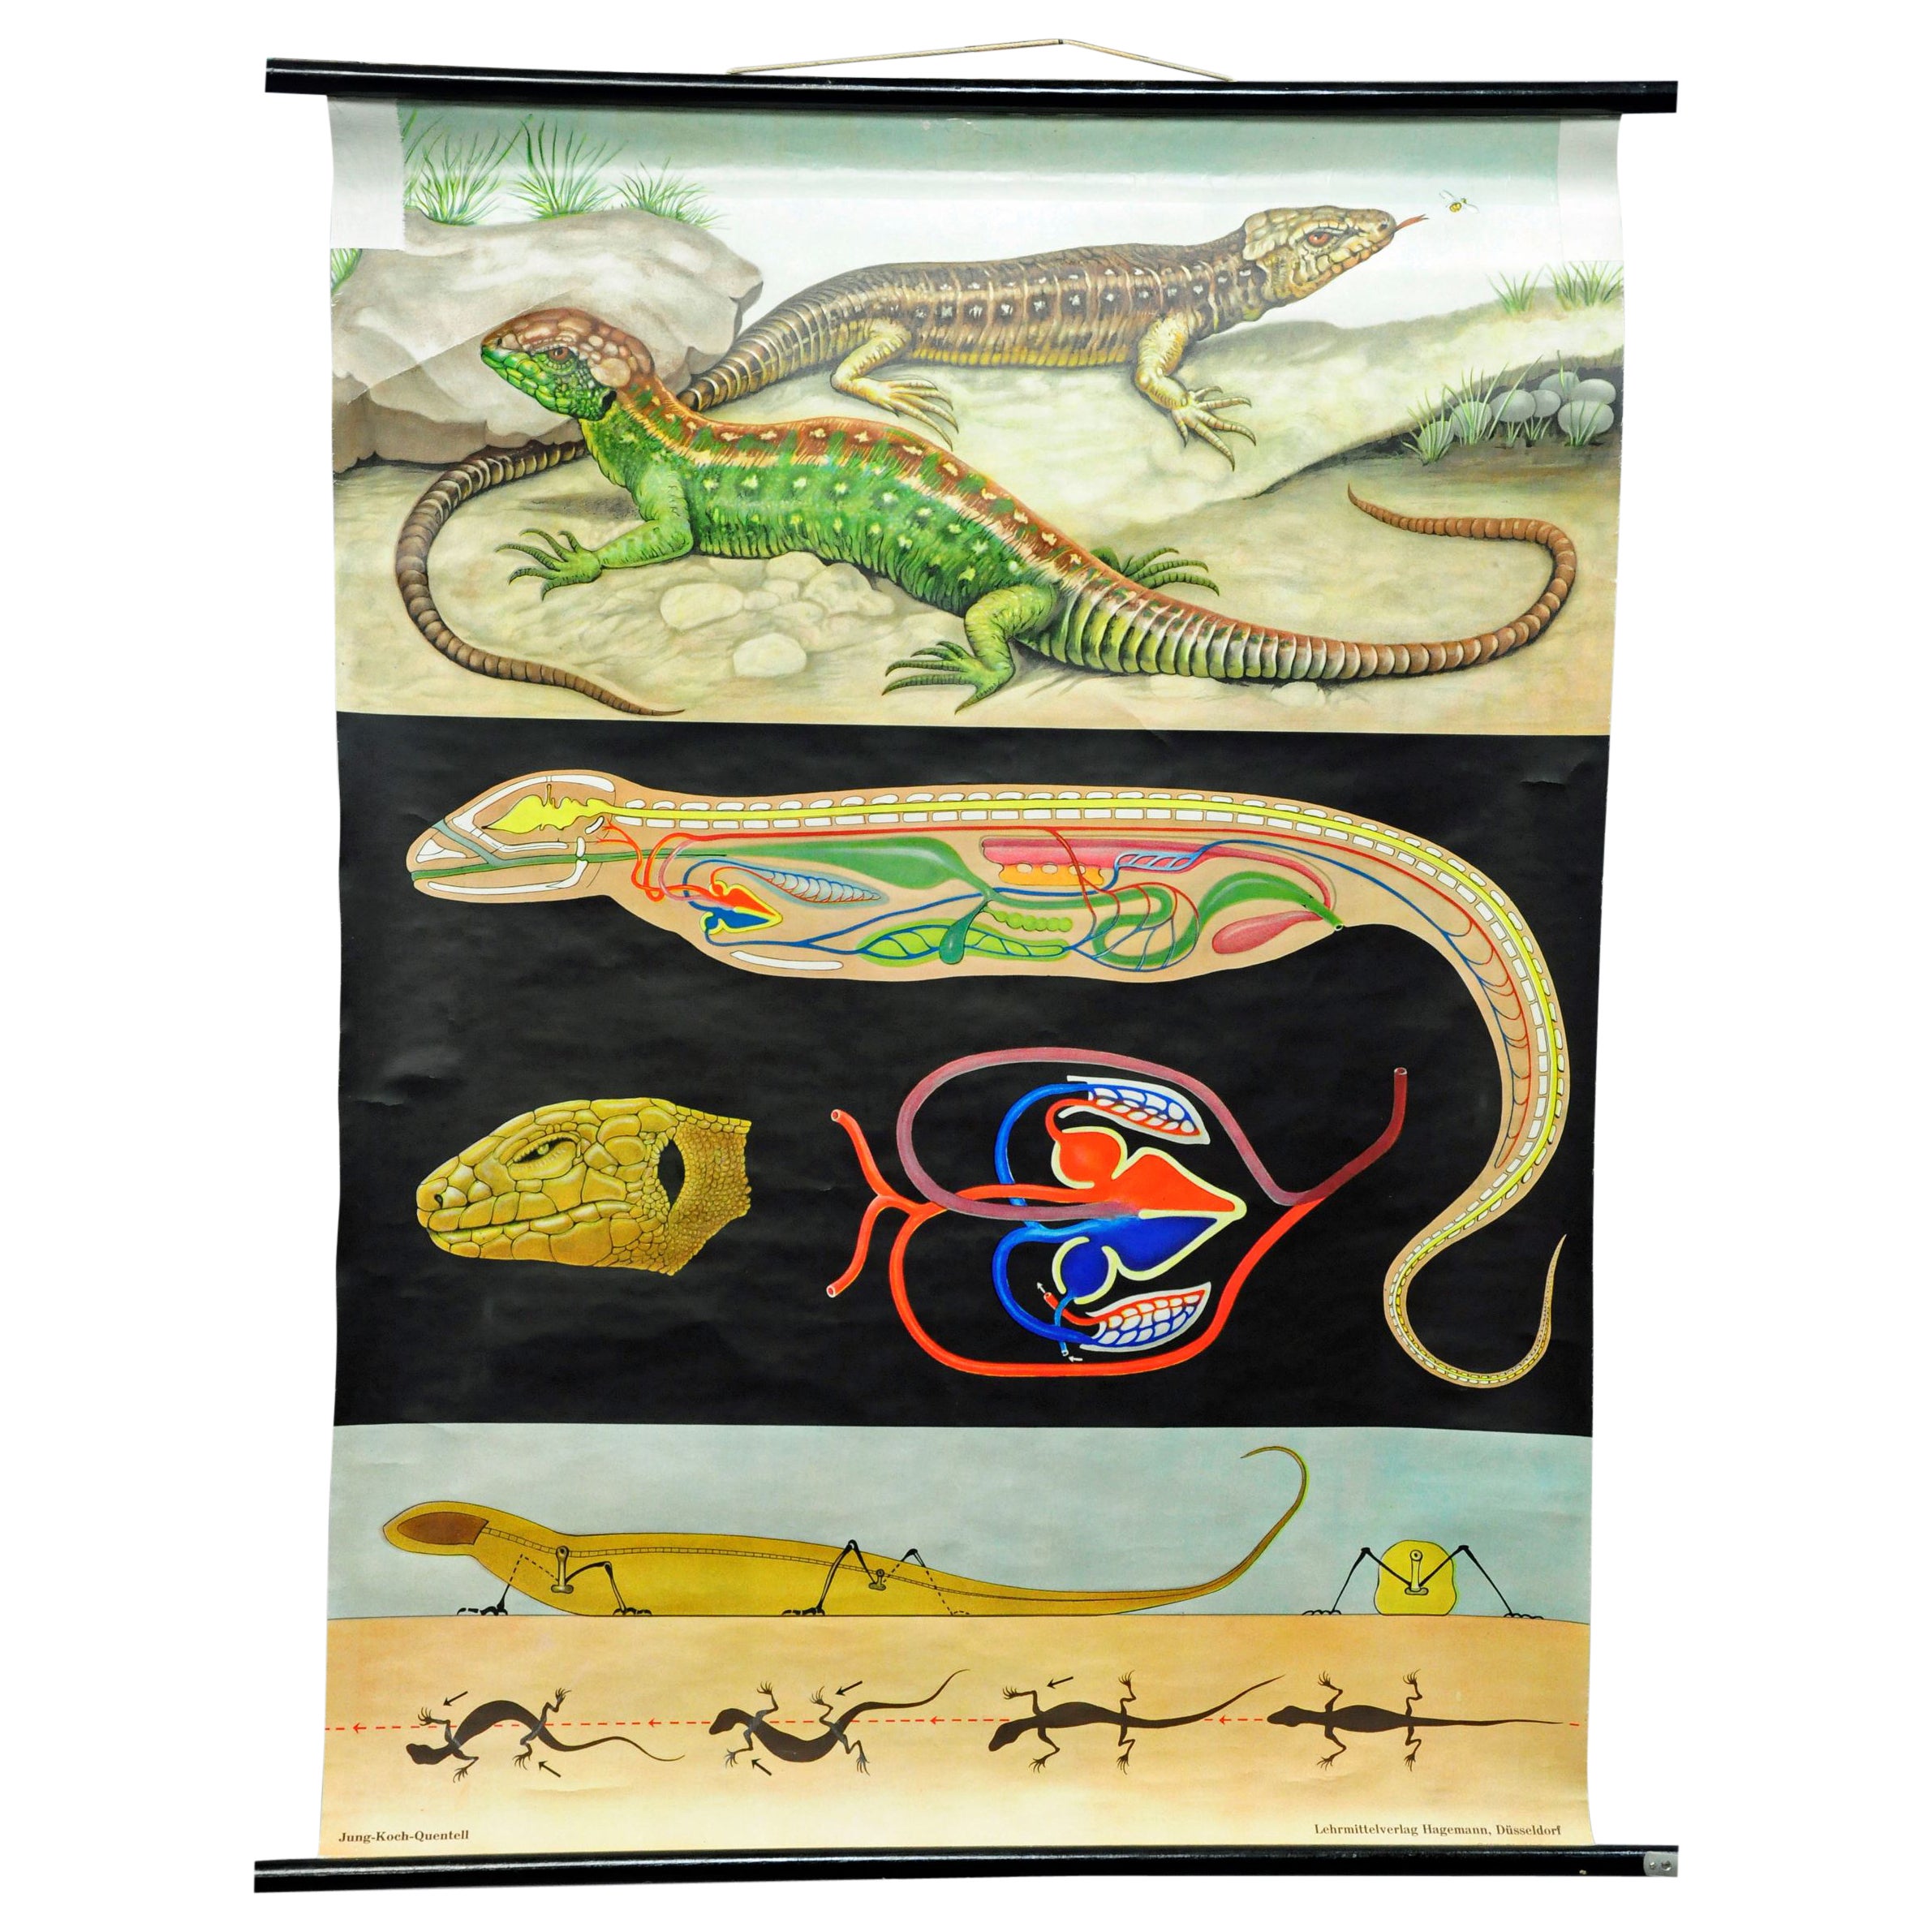 Amphibians Sand Lizard Lacerta Agilis Wallchart Art Print Jung Koch Quentell